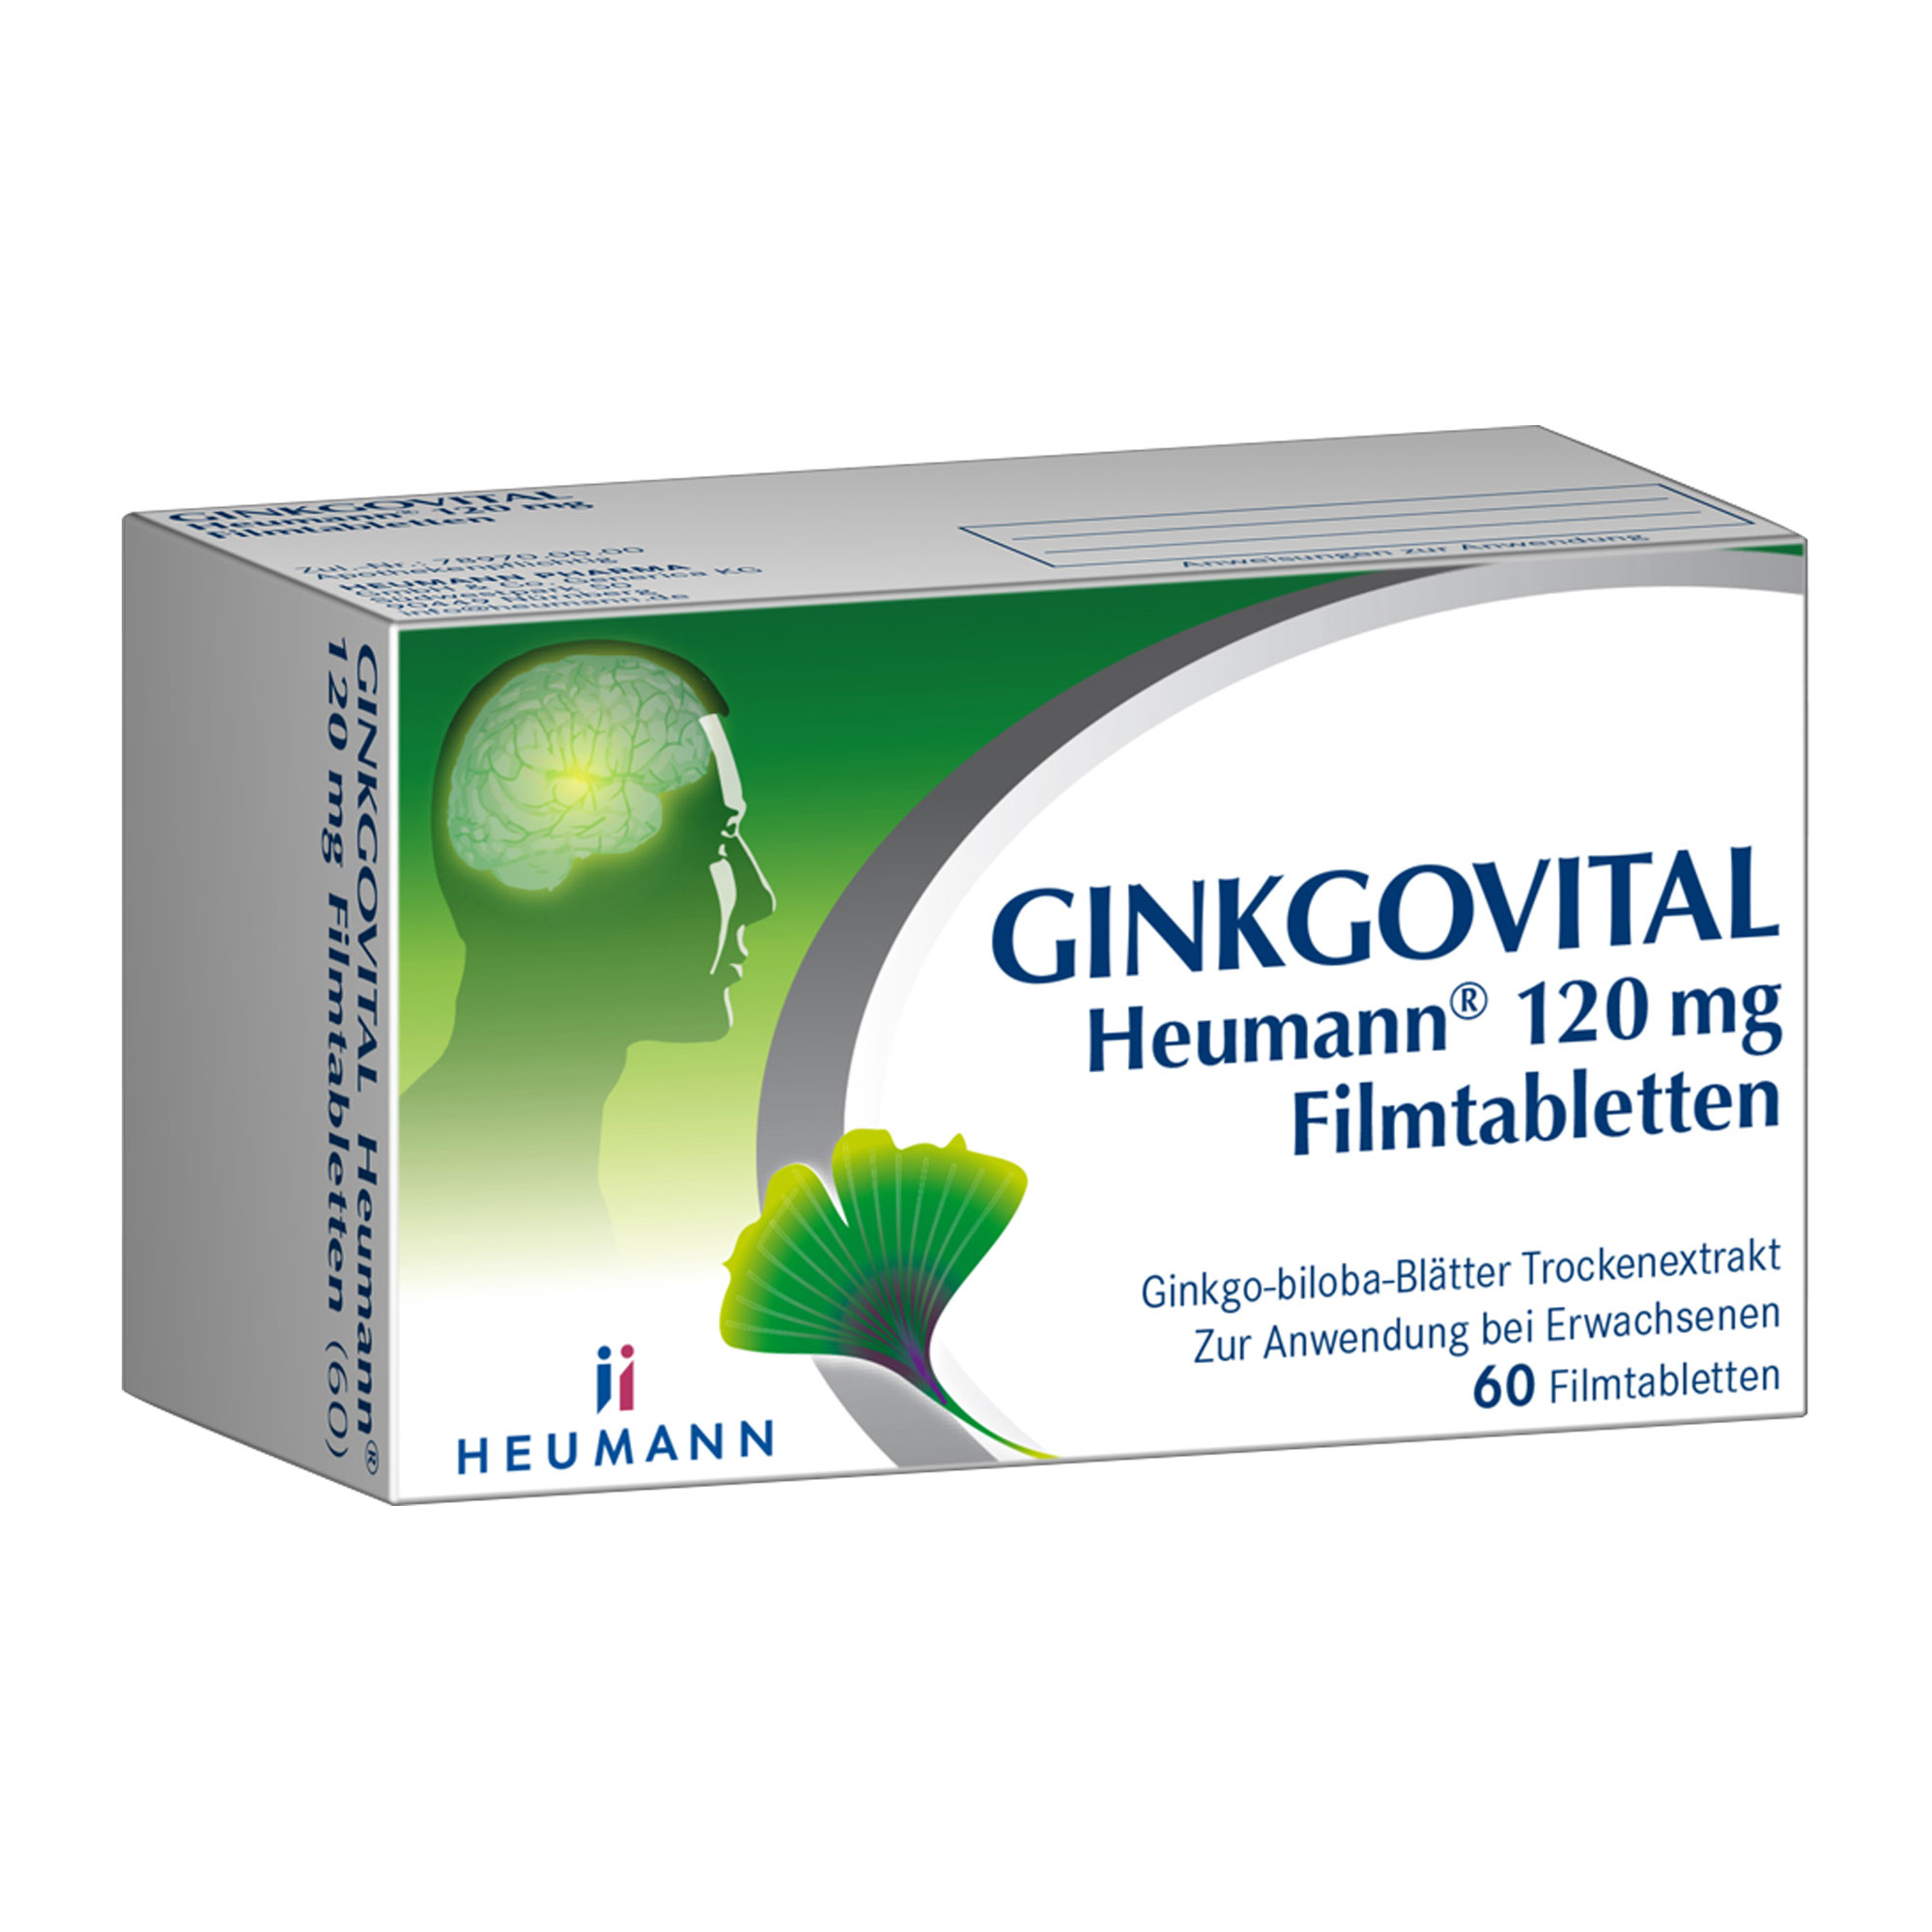 Pflanzliches Arzneimittel mit 120 mg Ginkgo-biloba-Blätter Trockenextrakt. Stärkt Gedächtnis und Konzentration.